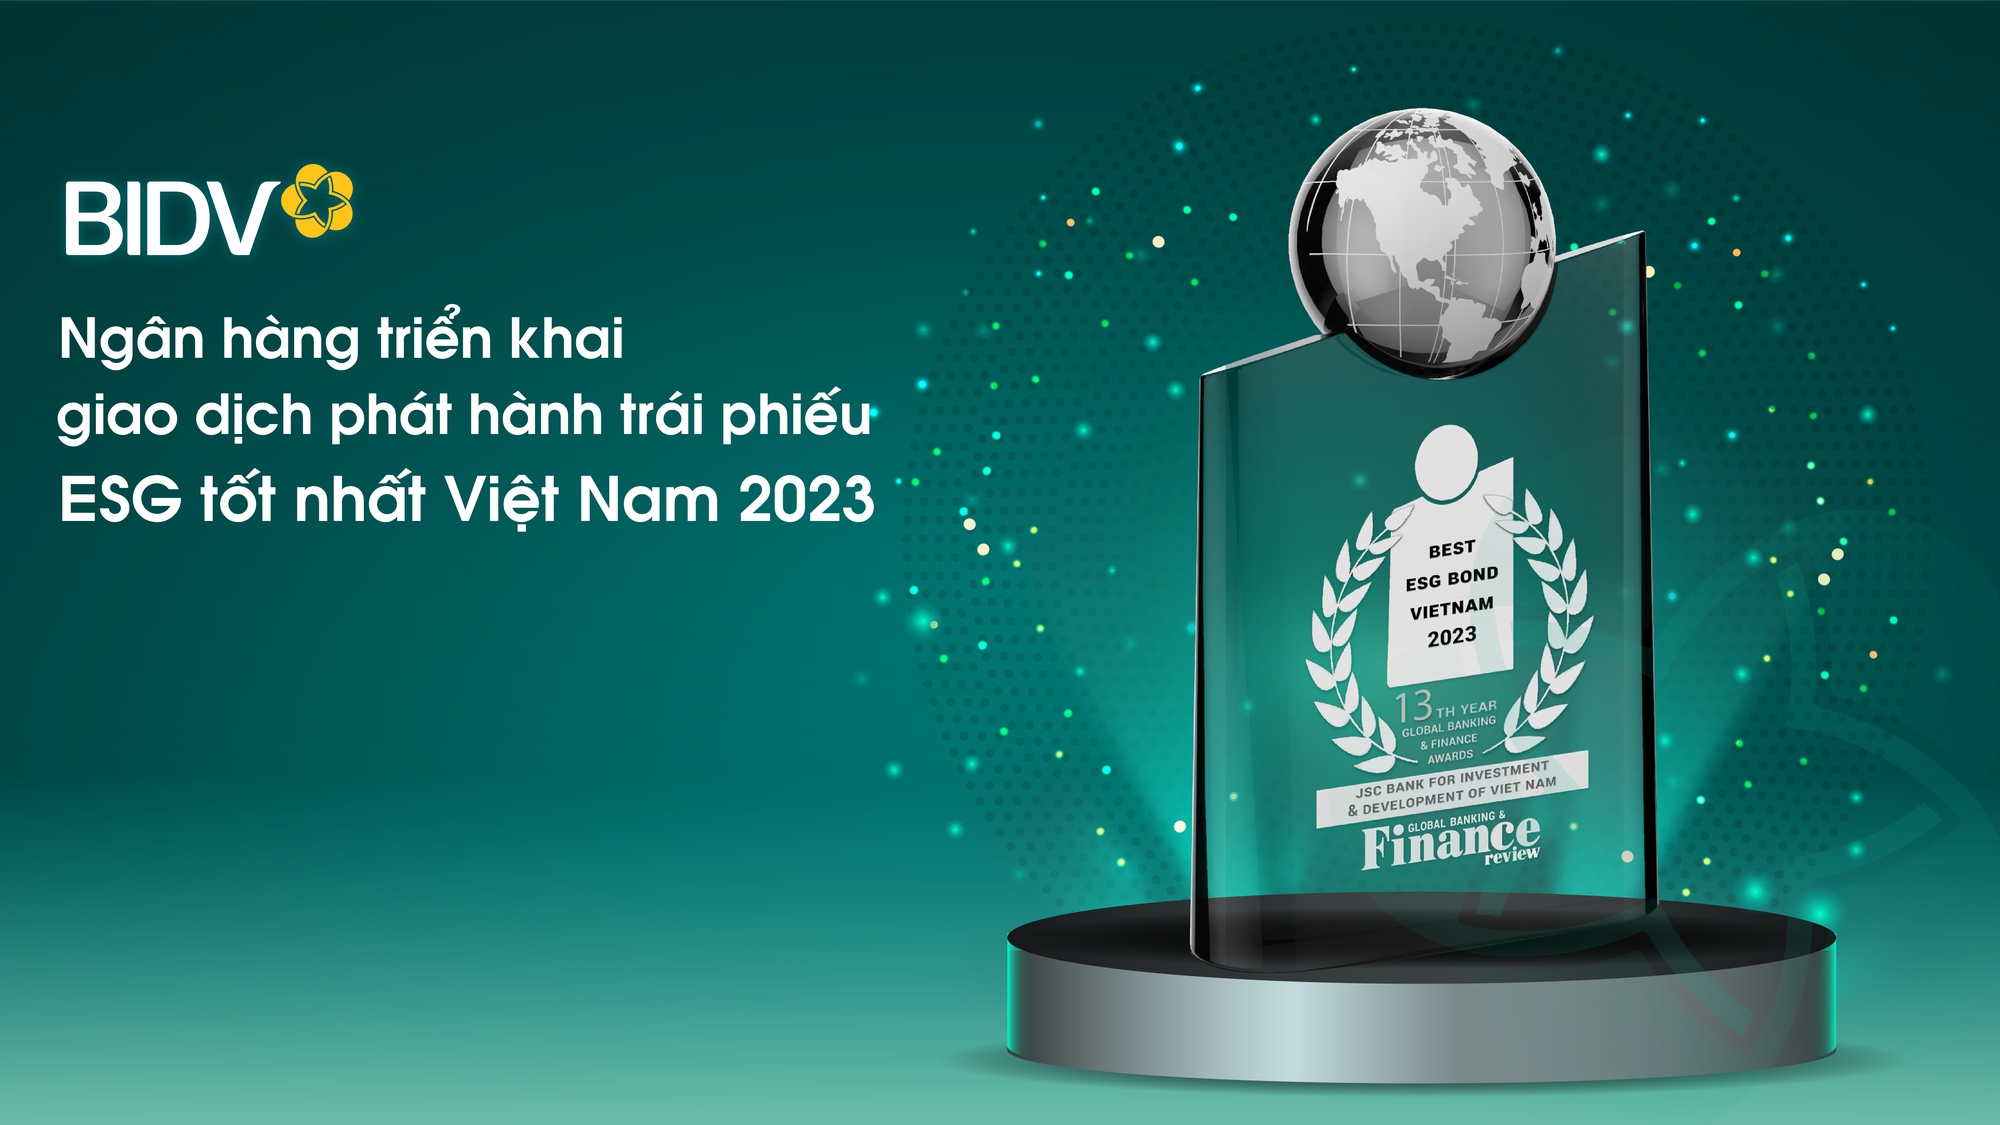 BIDV - Ngân hàng triển khai giao dịch phát hành trái phiếu ESG tốt nhất Việt Nam 2023- Ảnh 1.